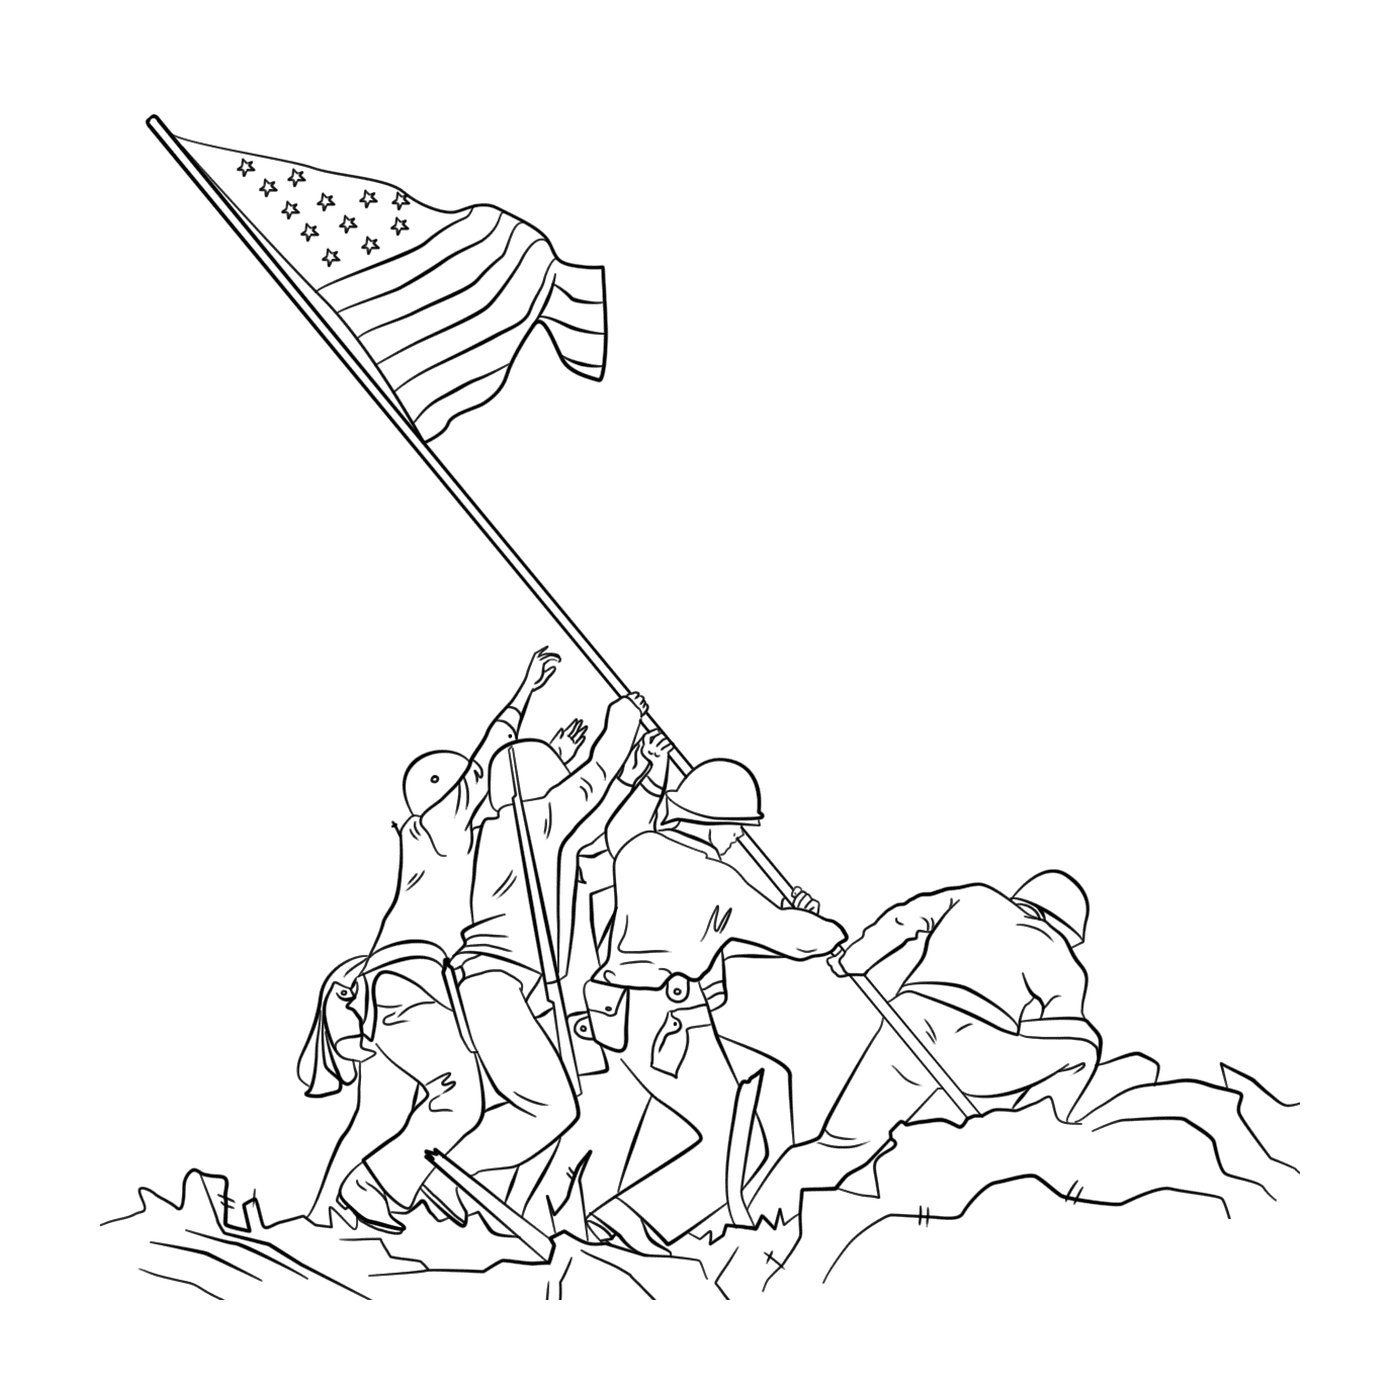   Groupe de personnes brandissant un drapeau lors de la levée du drapeau sur Iwo Jima 